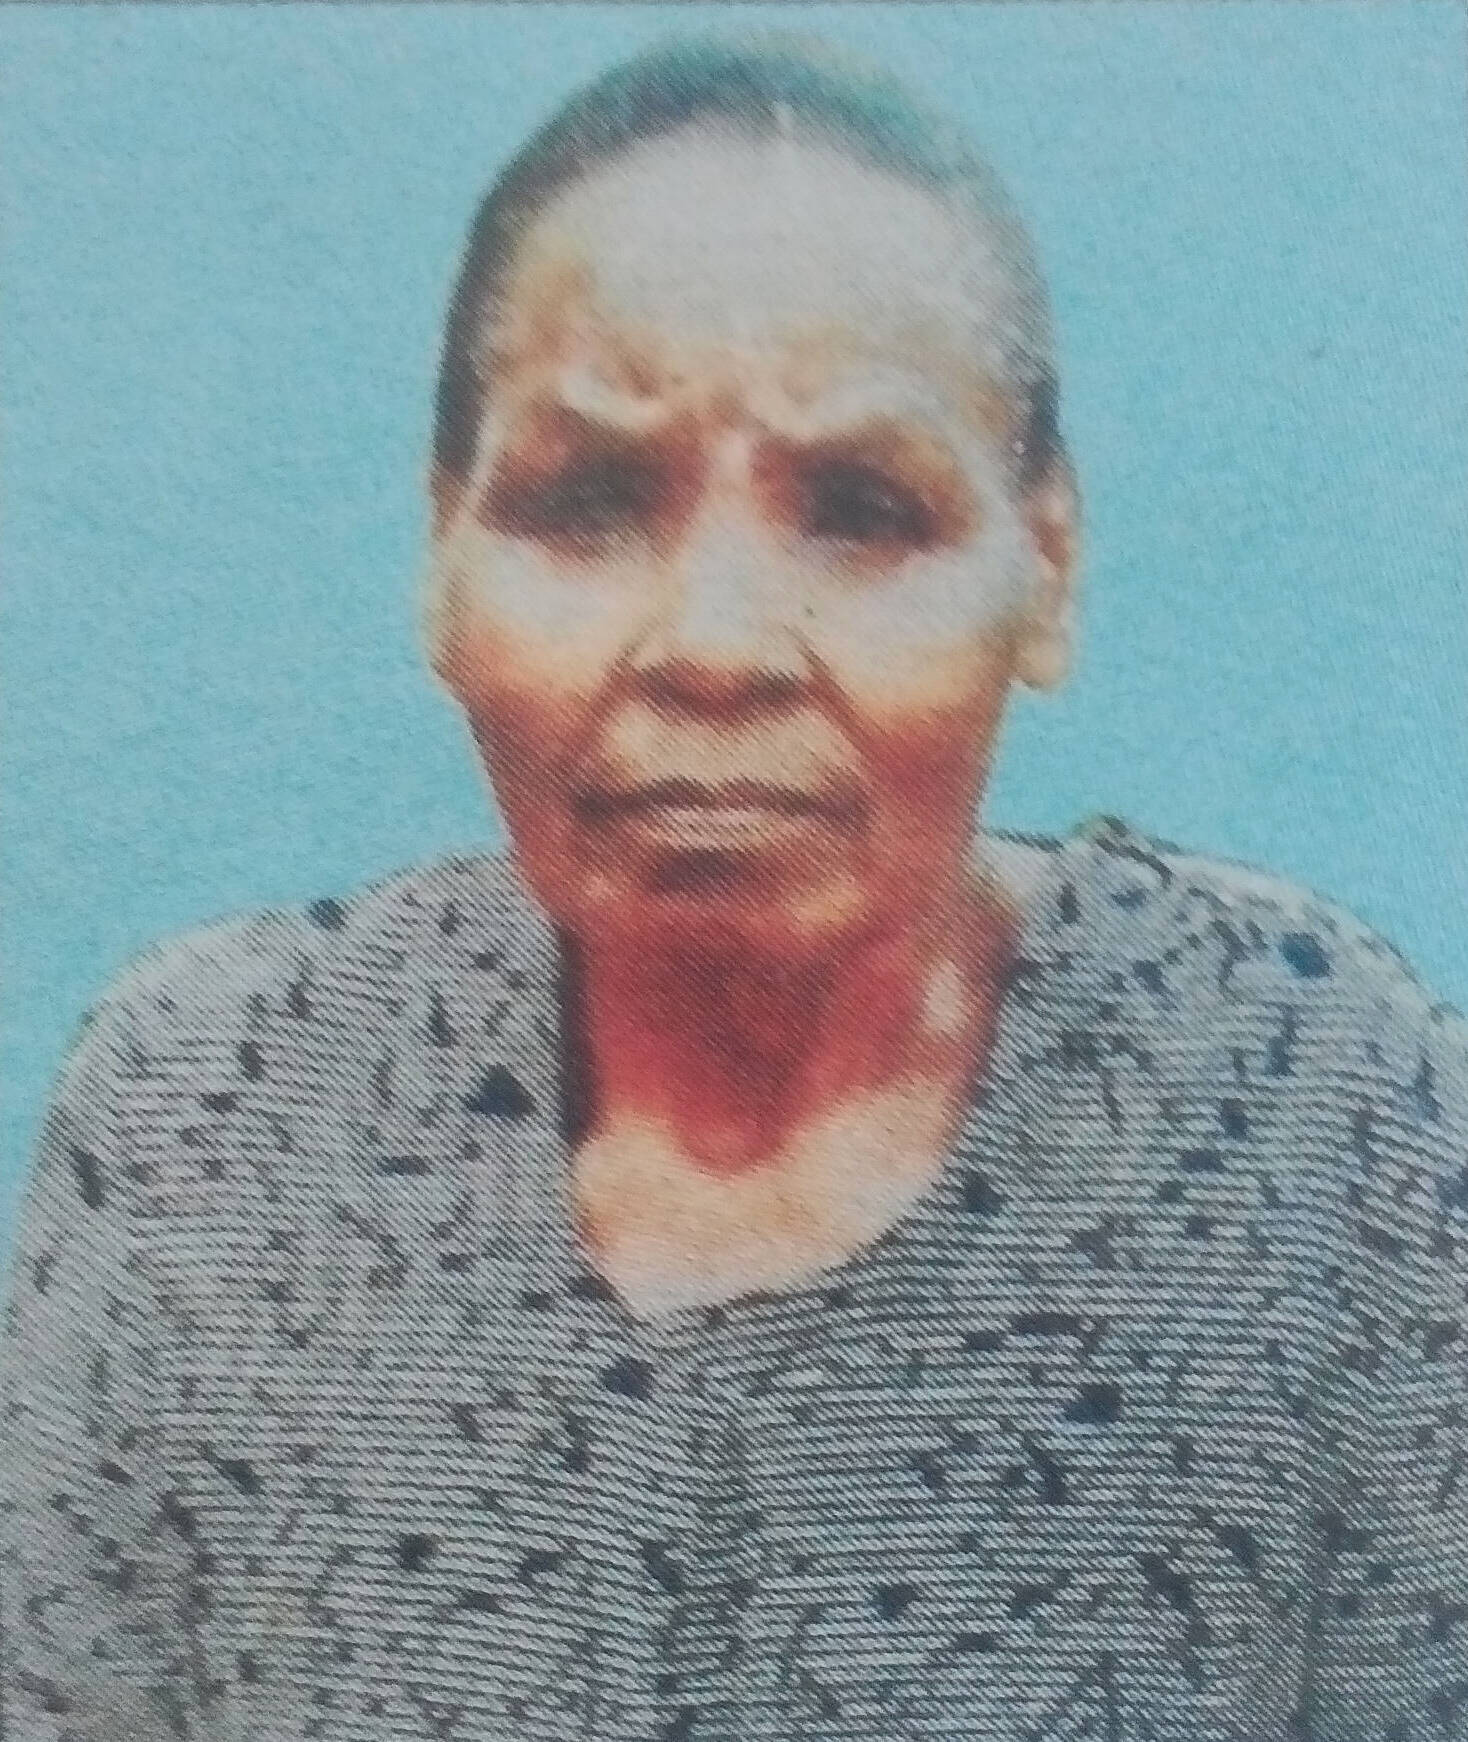 Obituary Image of Esther Kalondu Sammy Mwanzi Birth 1947-Death 21/03/2017